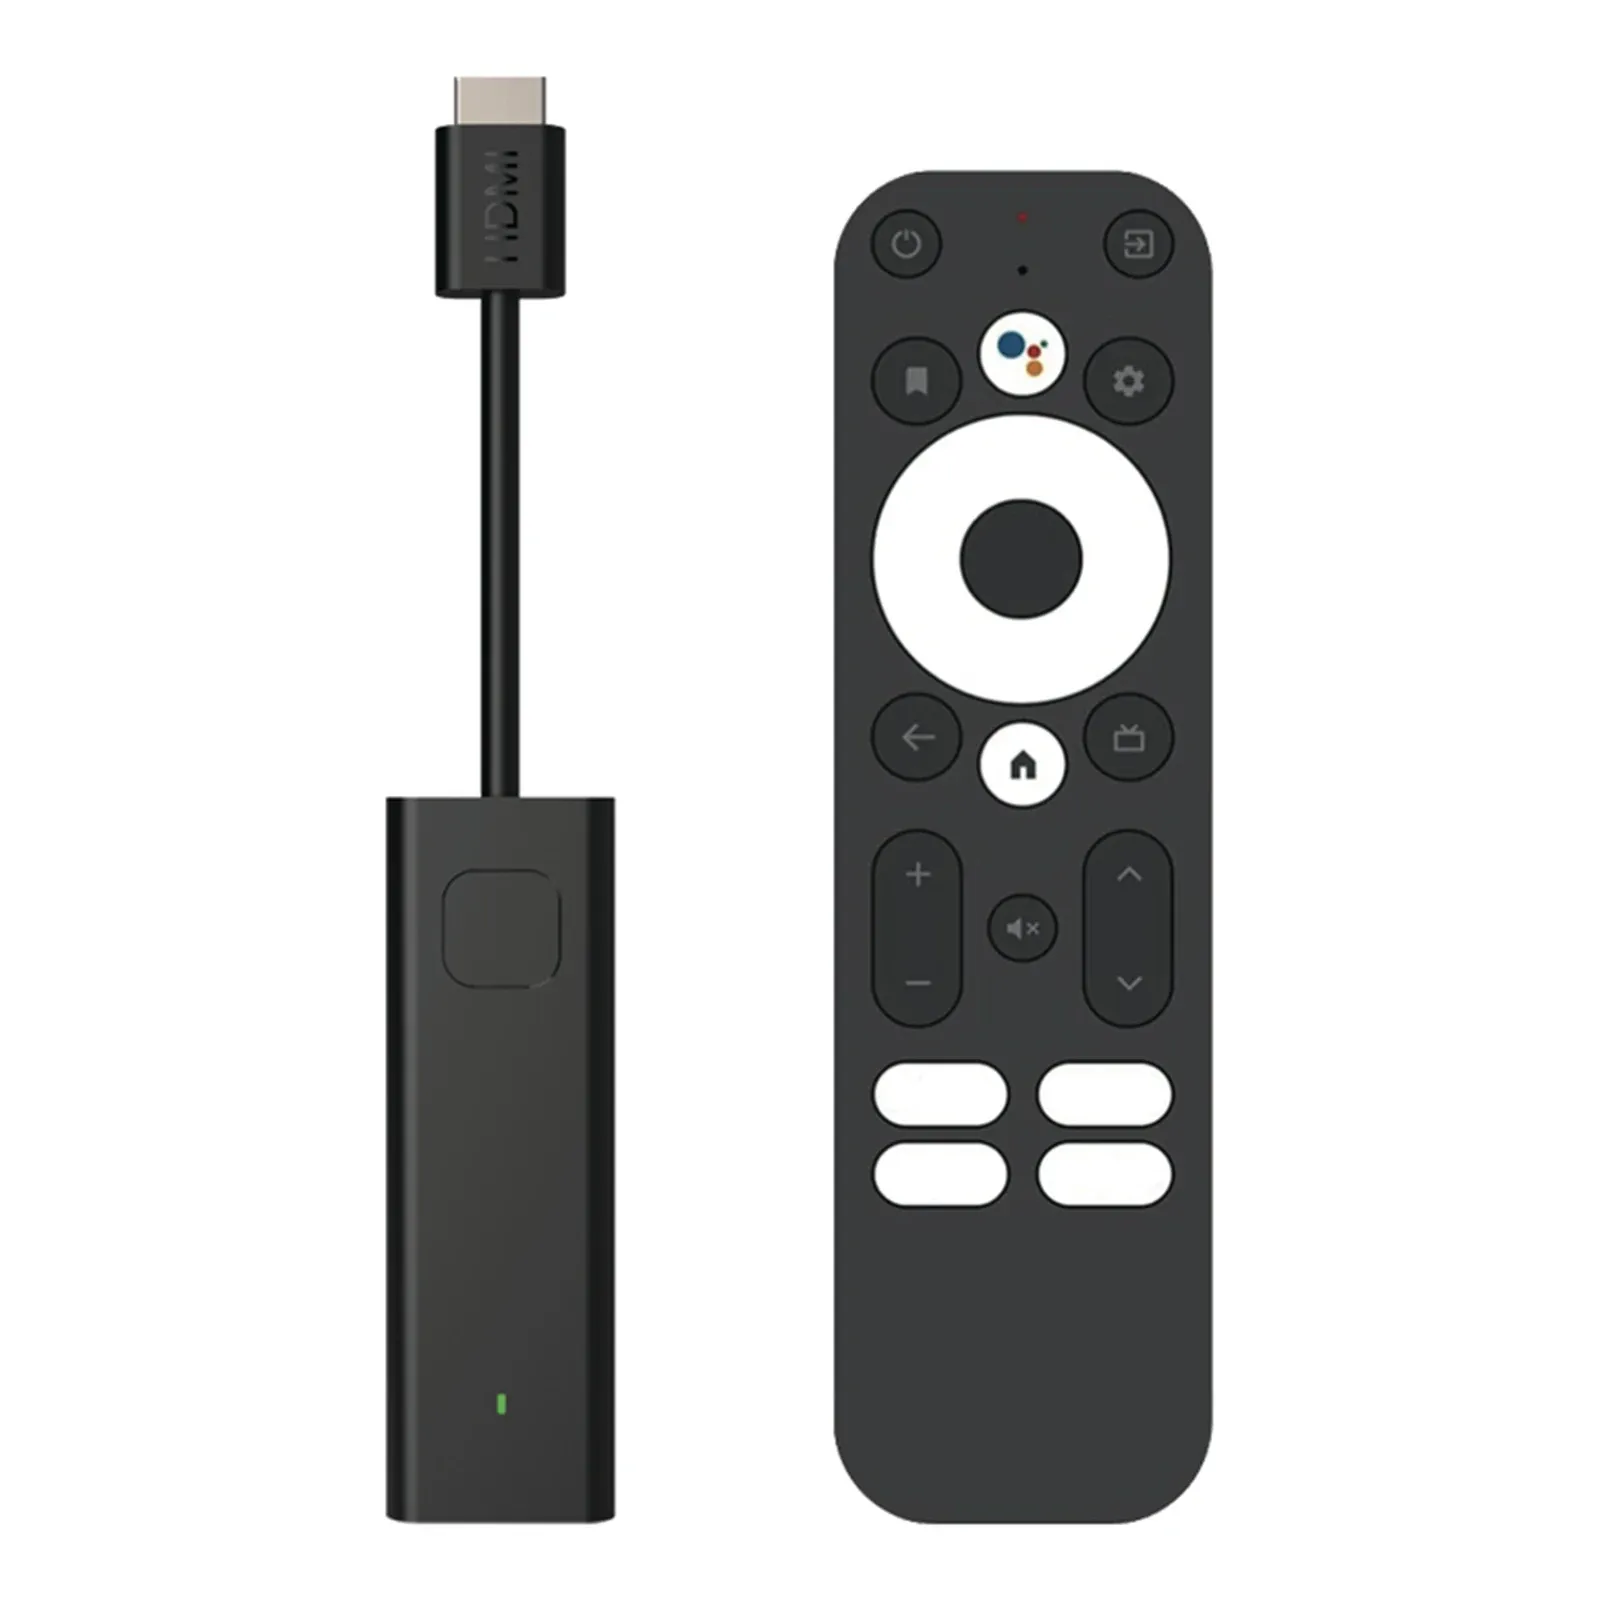 Box TV Stick Performance basse puissance Besutin Chromecast 4K Streaming Support Dernier Android 11 OS Contrôle vocal pour la maison et les affaires